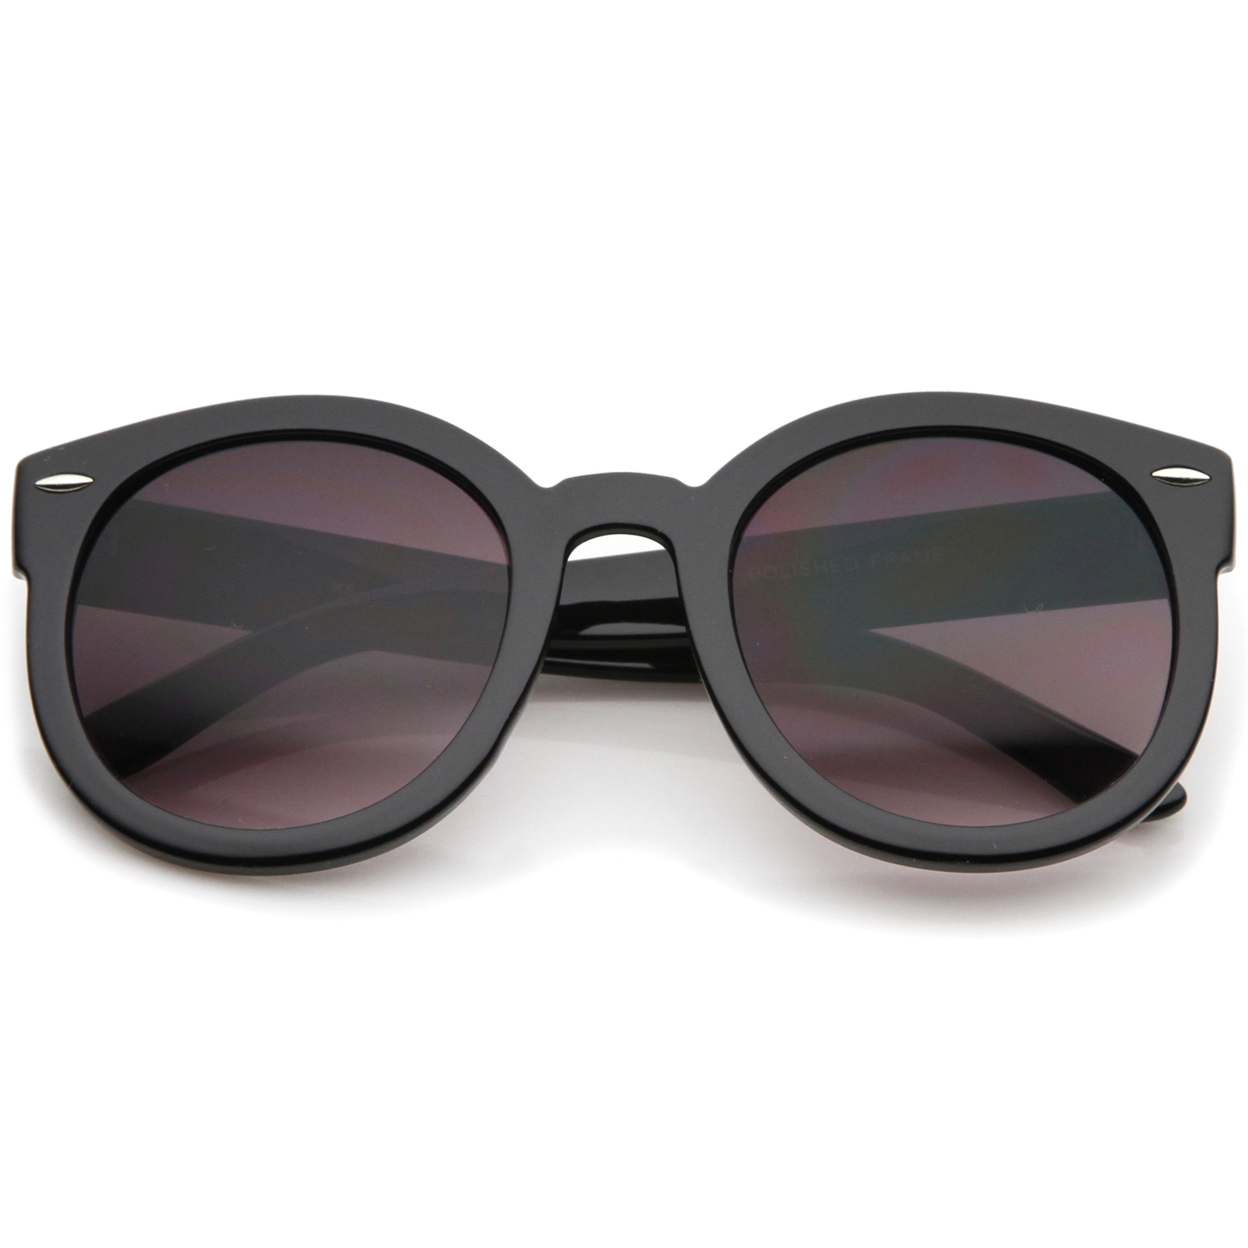 Women's Retro Oversize Horn Rimmed P3 Round Sunglasses 52mm - Black / Lavender